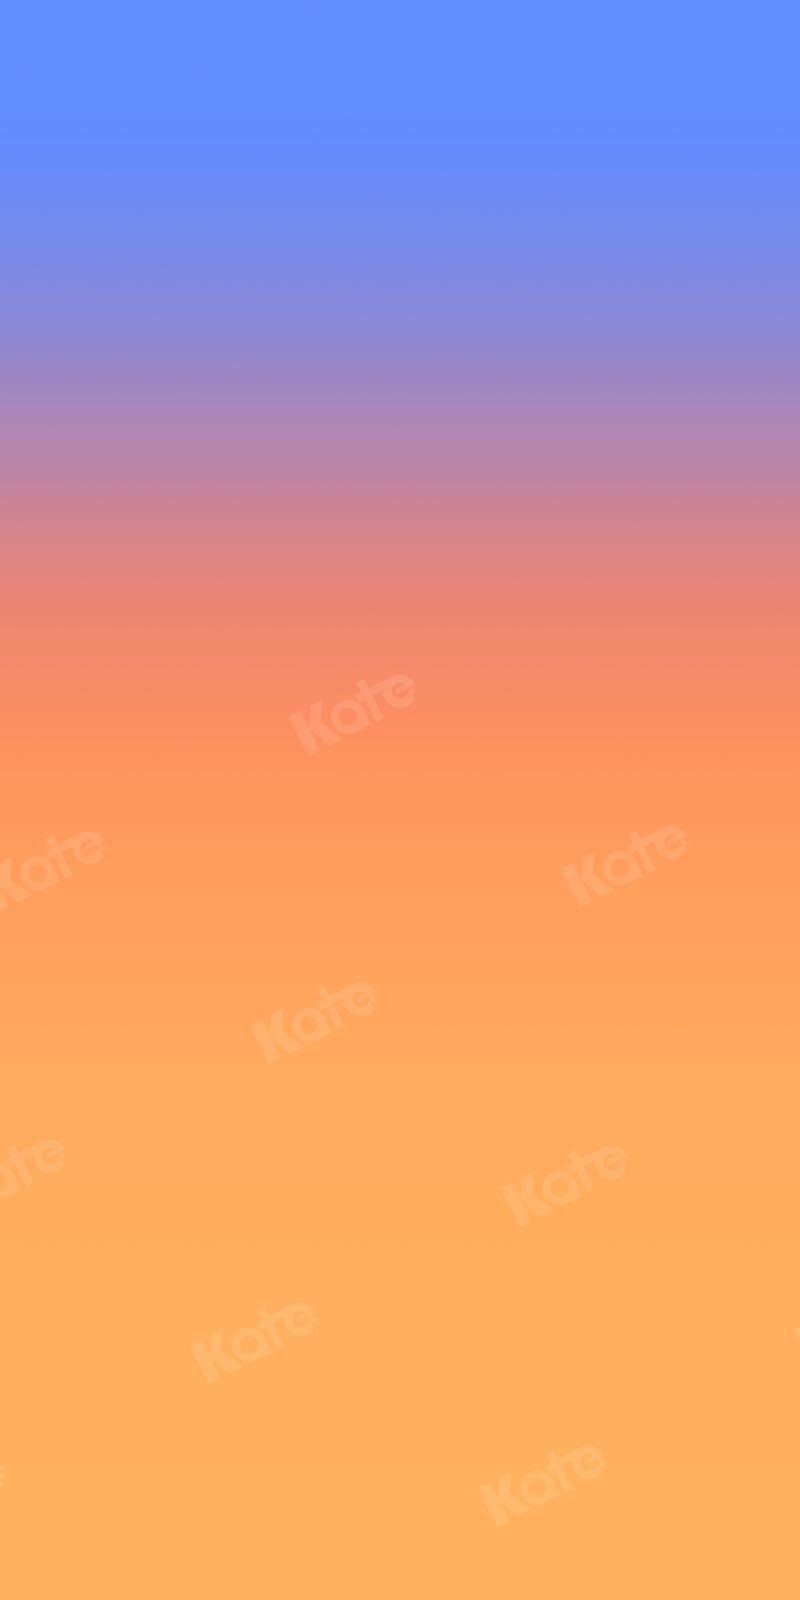 Kate Abstrakter blauer Farbverlauf-orange Hintergrund Ombre